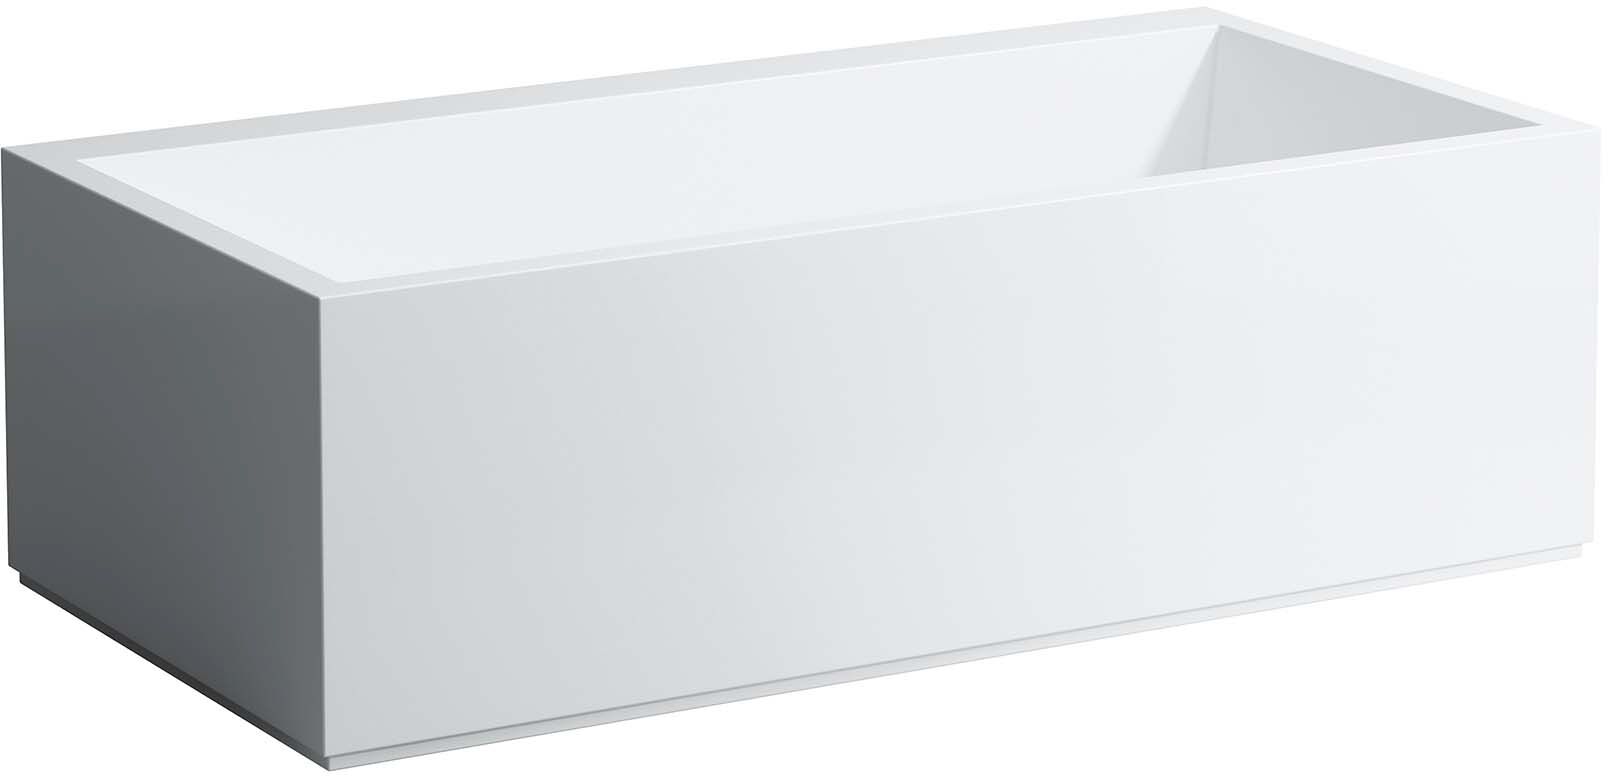 LAUFEN Kartell Freistehbadewanne H2233320006161 170 x 86 cm, mit LED-Beleuchtung, weiß